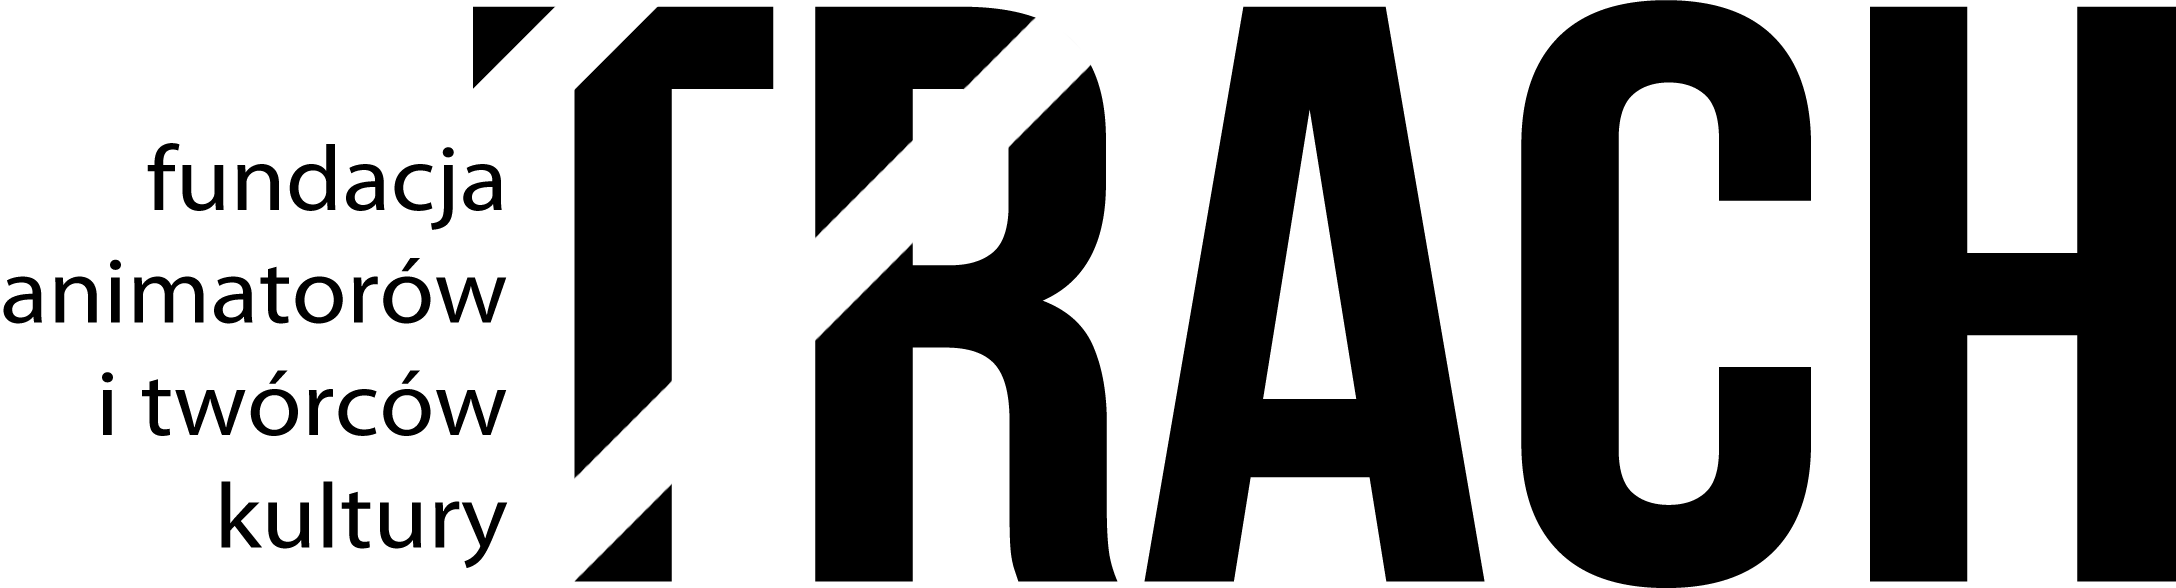 Logo fundacji animatorów i twórców kultury TRACH